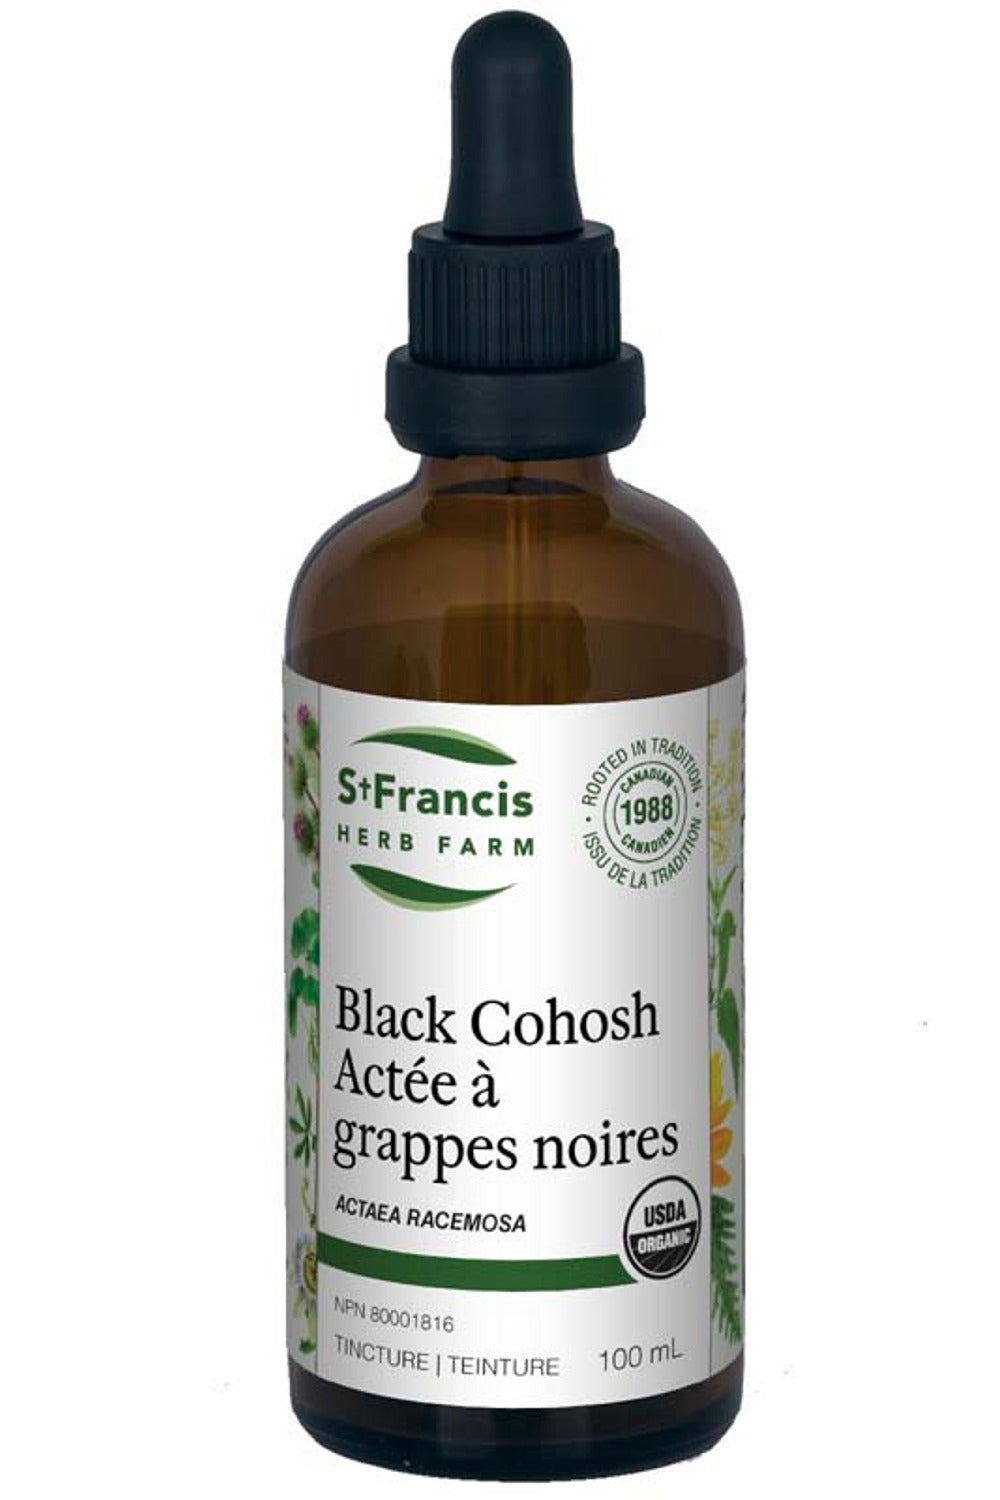 ST FRANCIS HERB FARM Black Cohosh (100 ml)